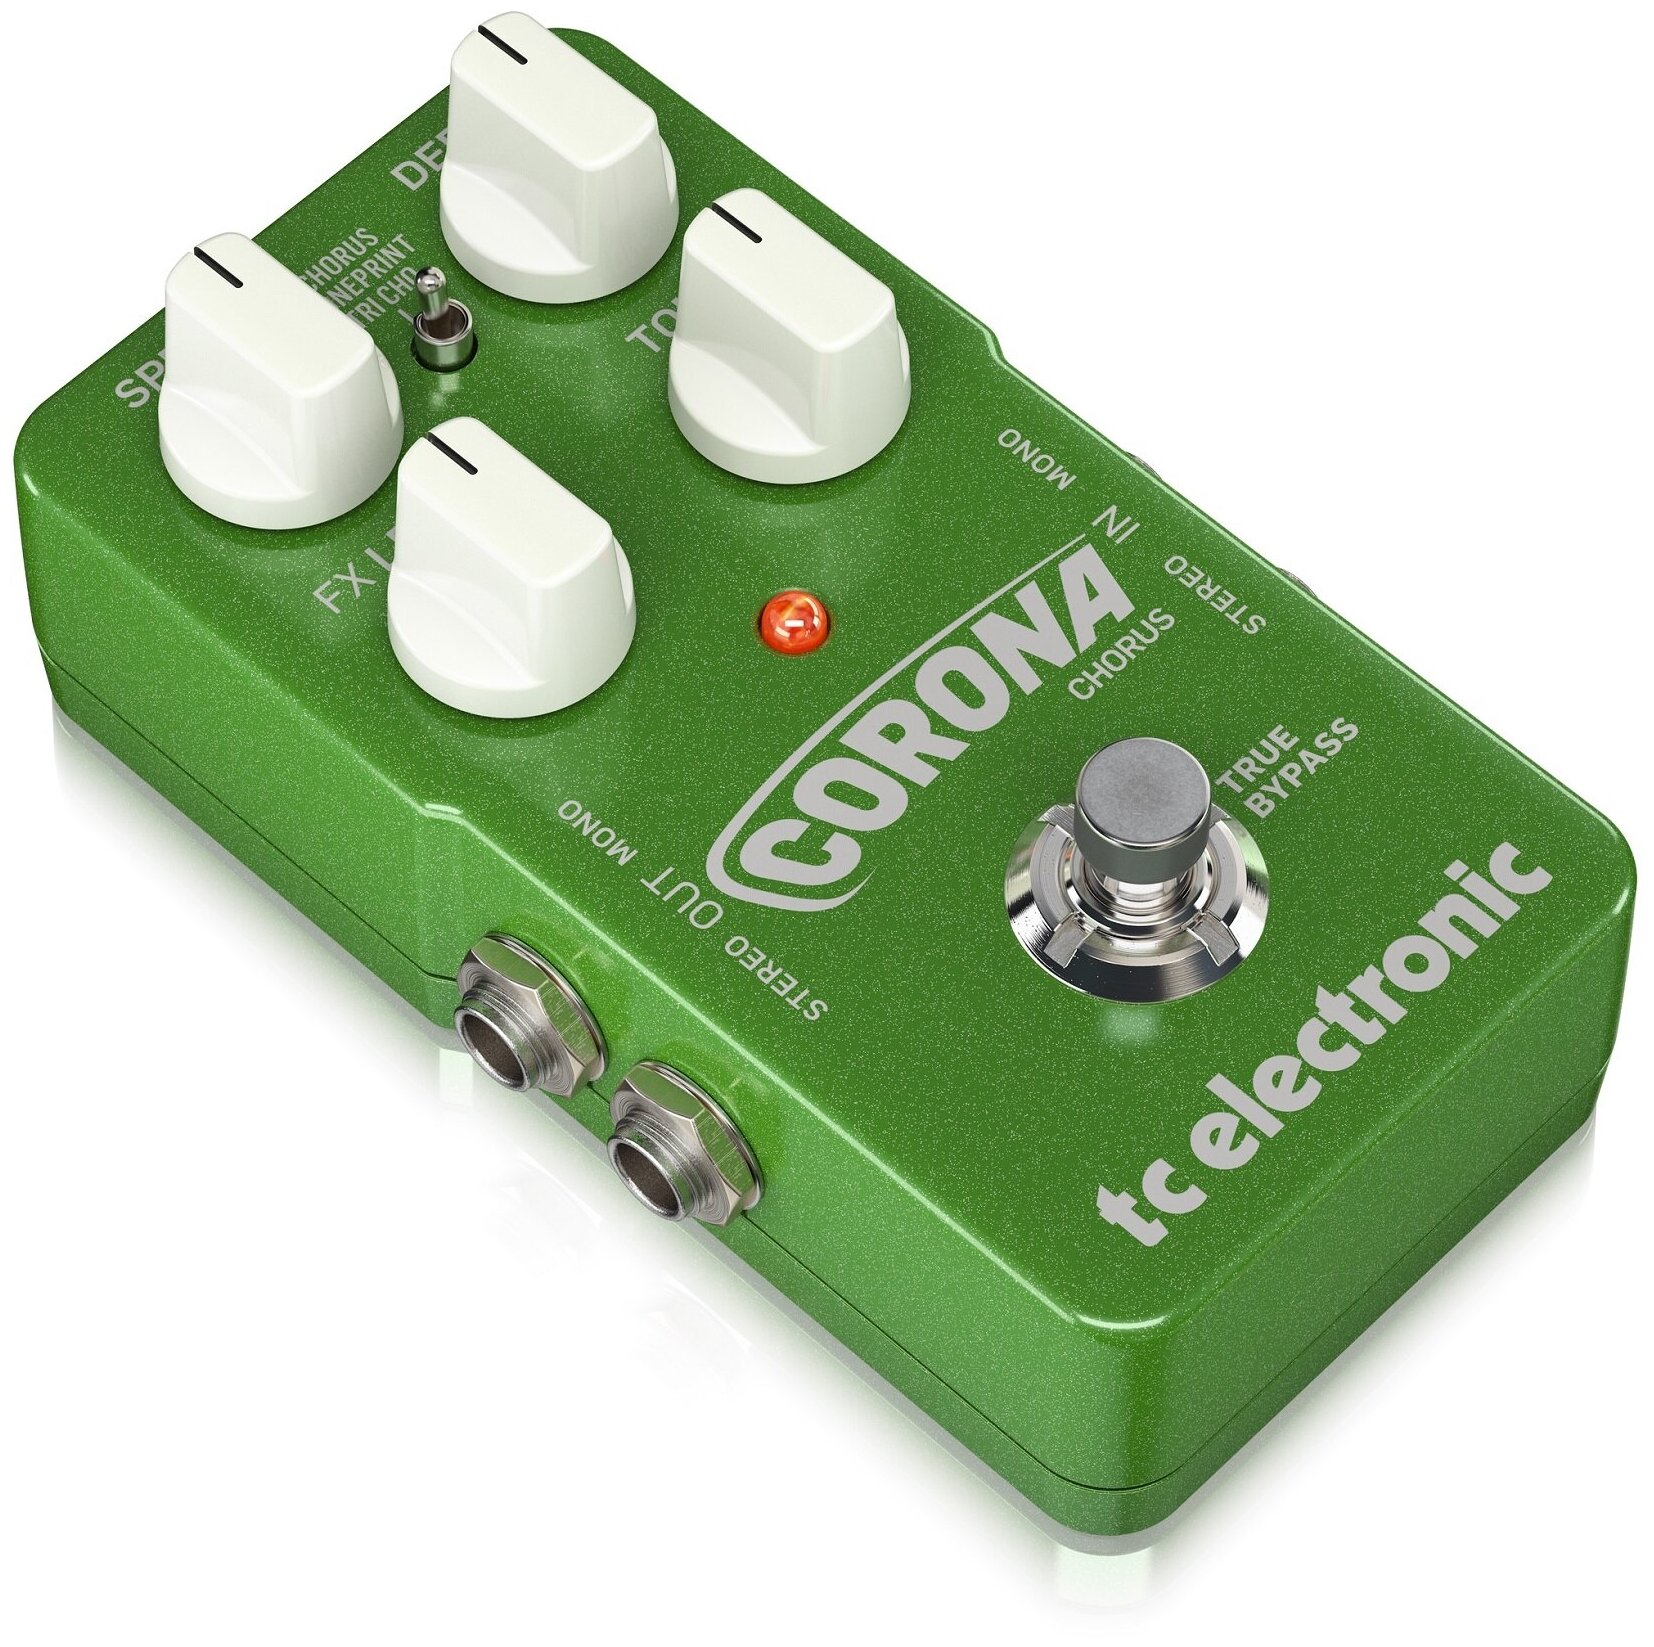 TC ELECTRONIC Corona Chorus TonePrint напольная гитарная педаль эффекта хорус, 3 типа эффекта, функция Toneprint - загрузка из интернета, запись и ред